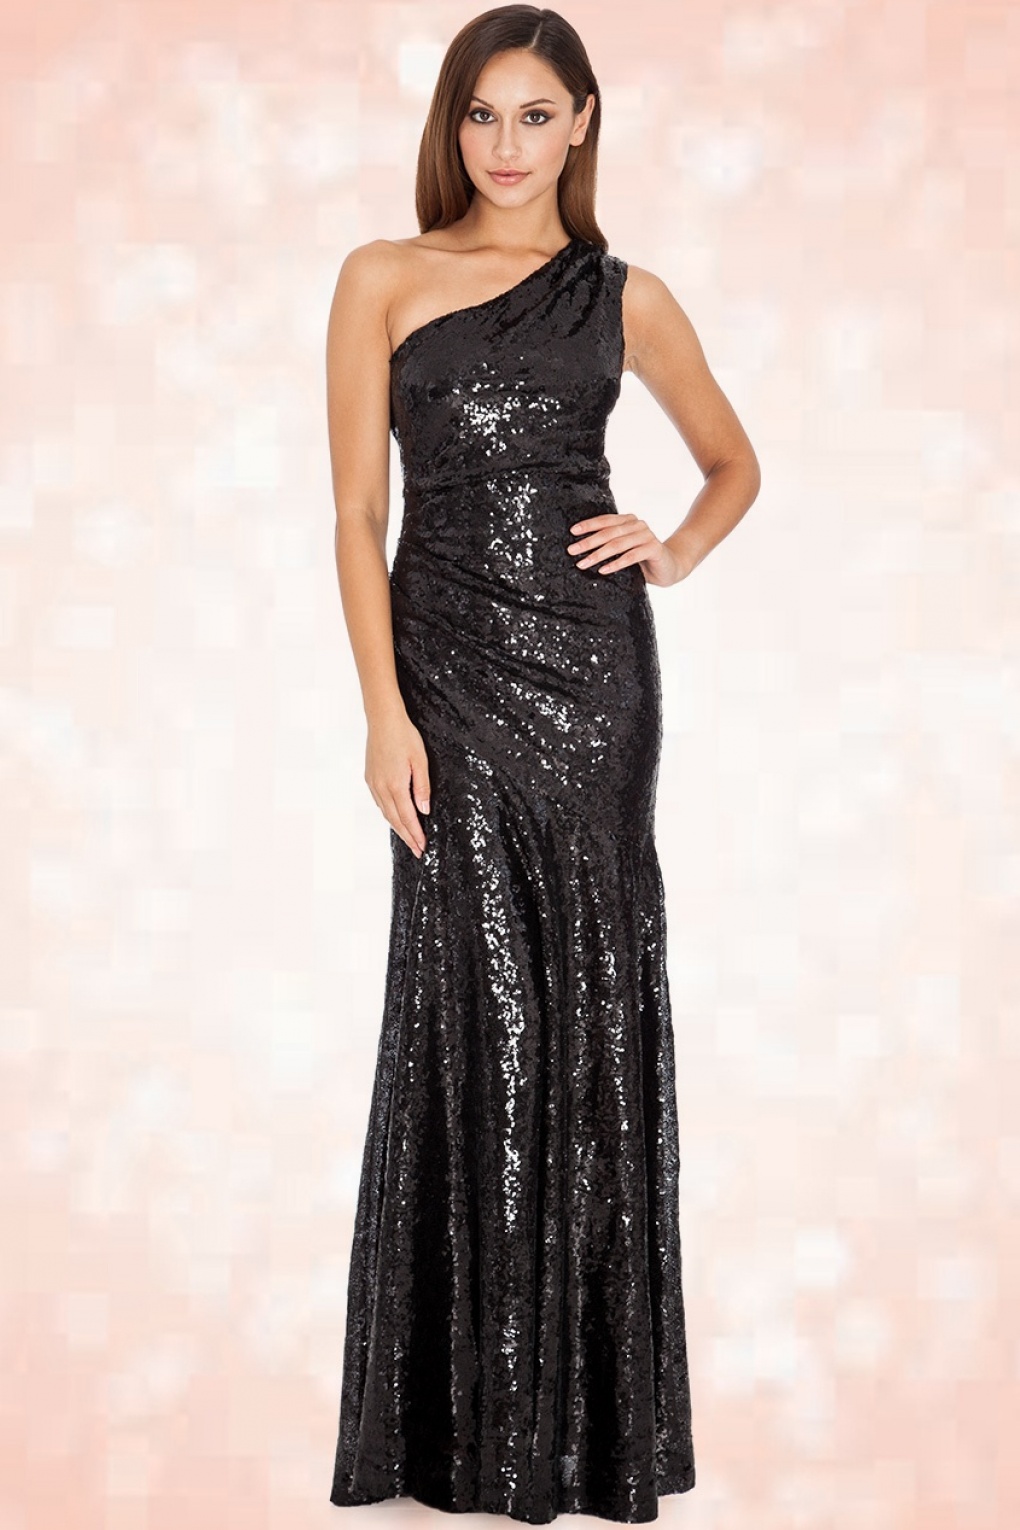 black sparkly one shoulder dress